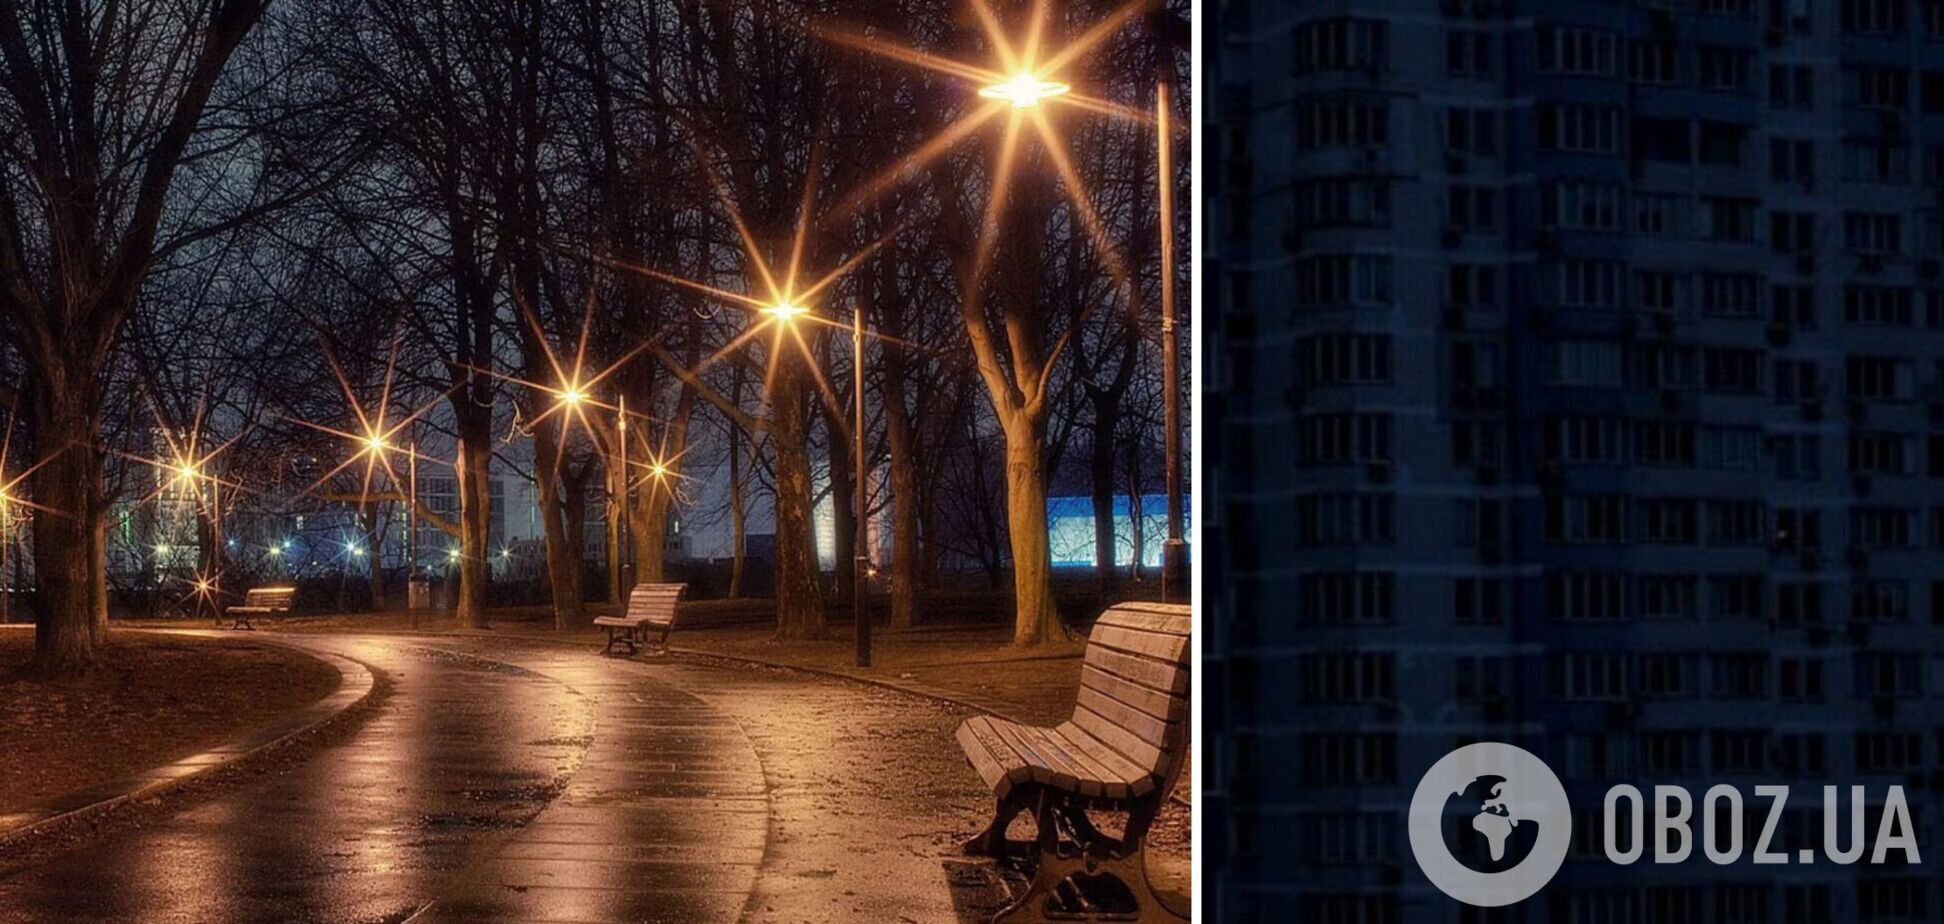 Експерт розповів, чому на вулицях можуть світити ліхтарі під час відключень